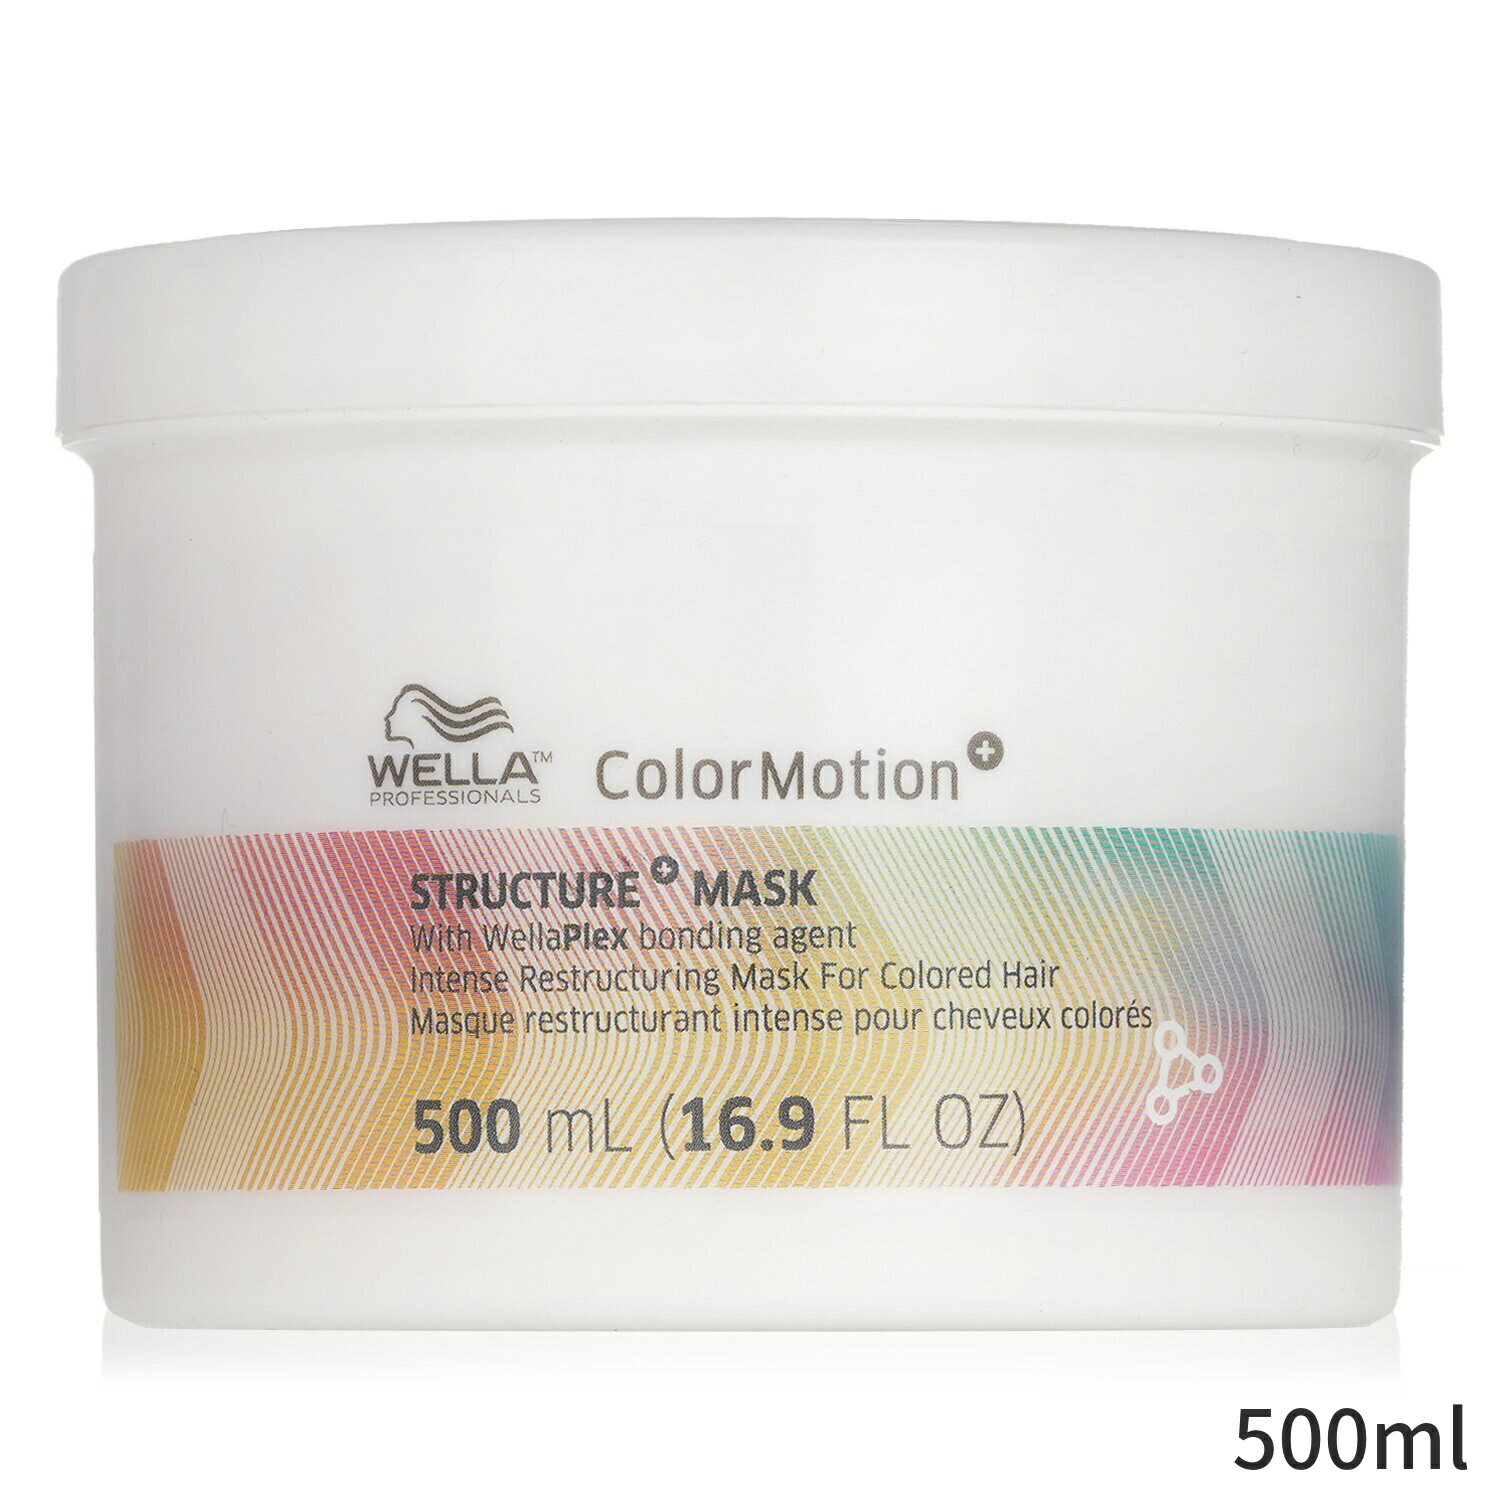 ウエラ ヘアマスク Wella ヘアパック ColorMotion+ Structure Mask 500ml ヘアケア トリートメント 誕生日プレゼント ギフト 人気 ブランド コスメ